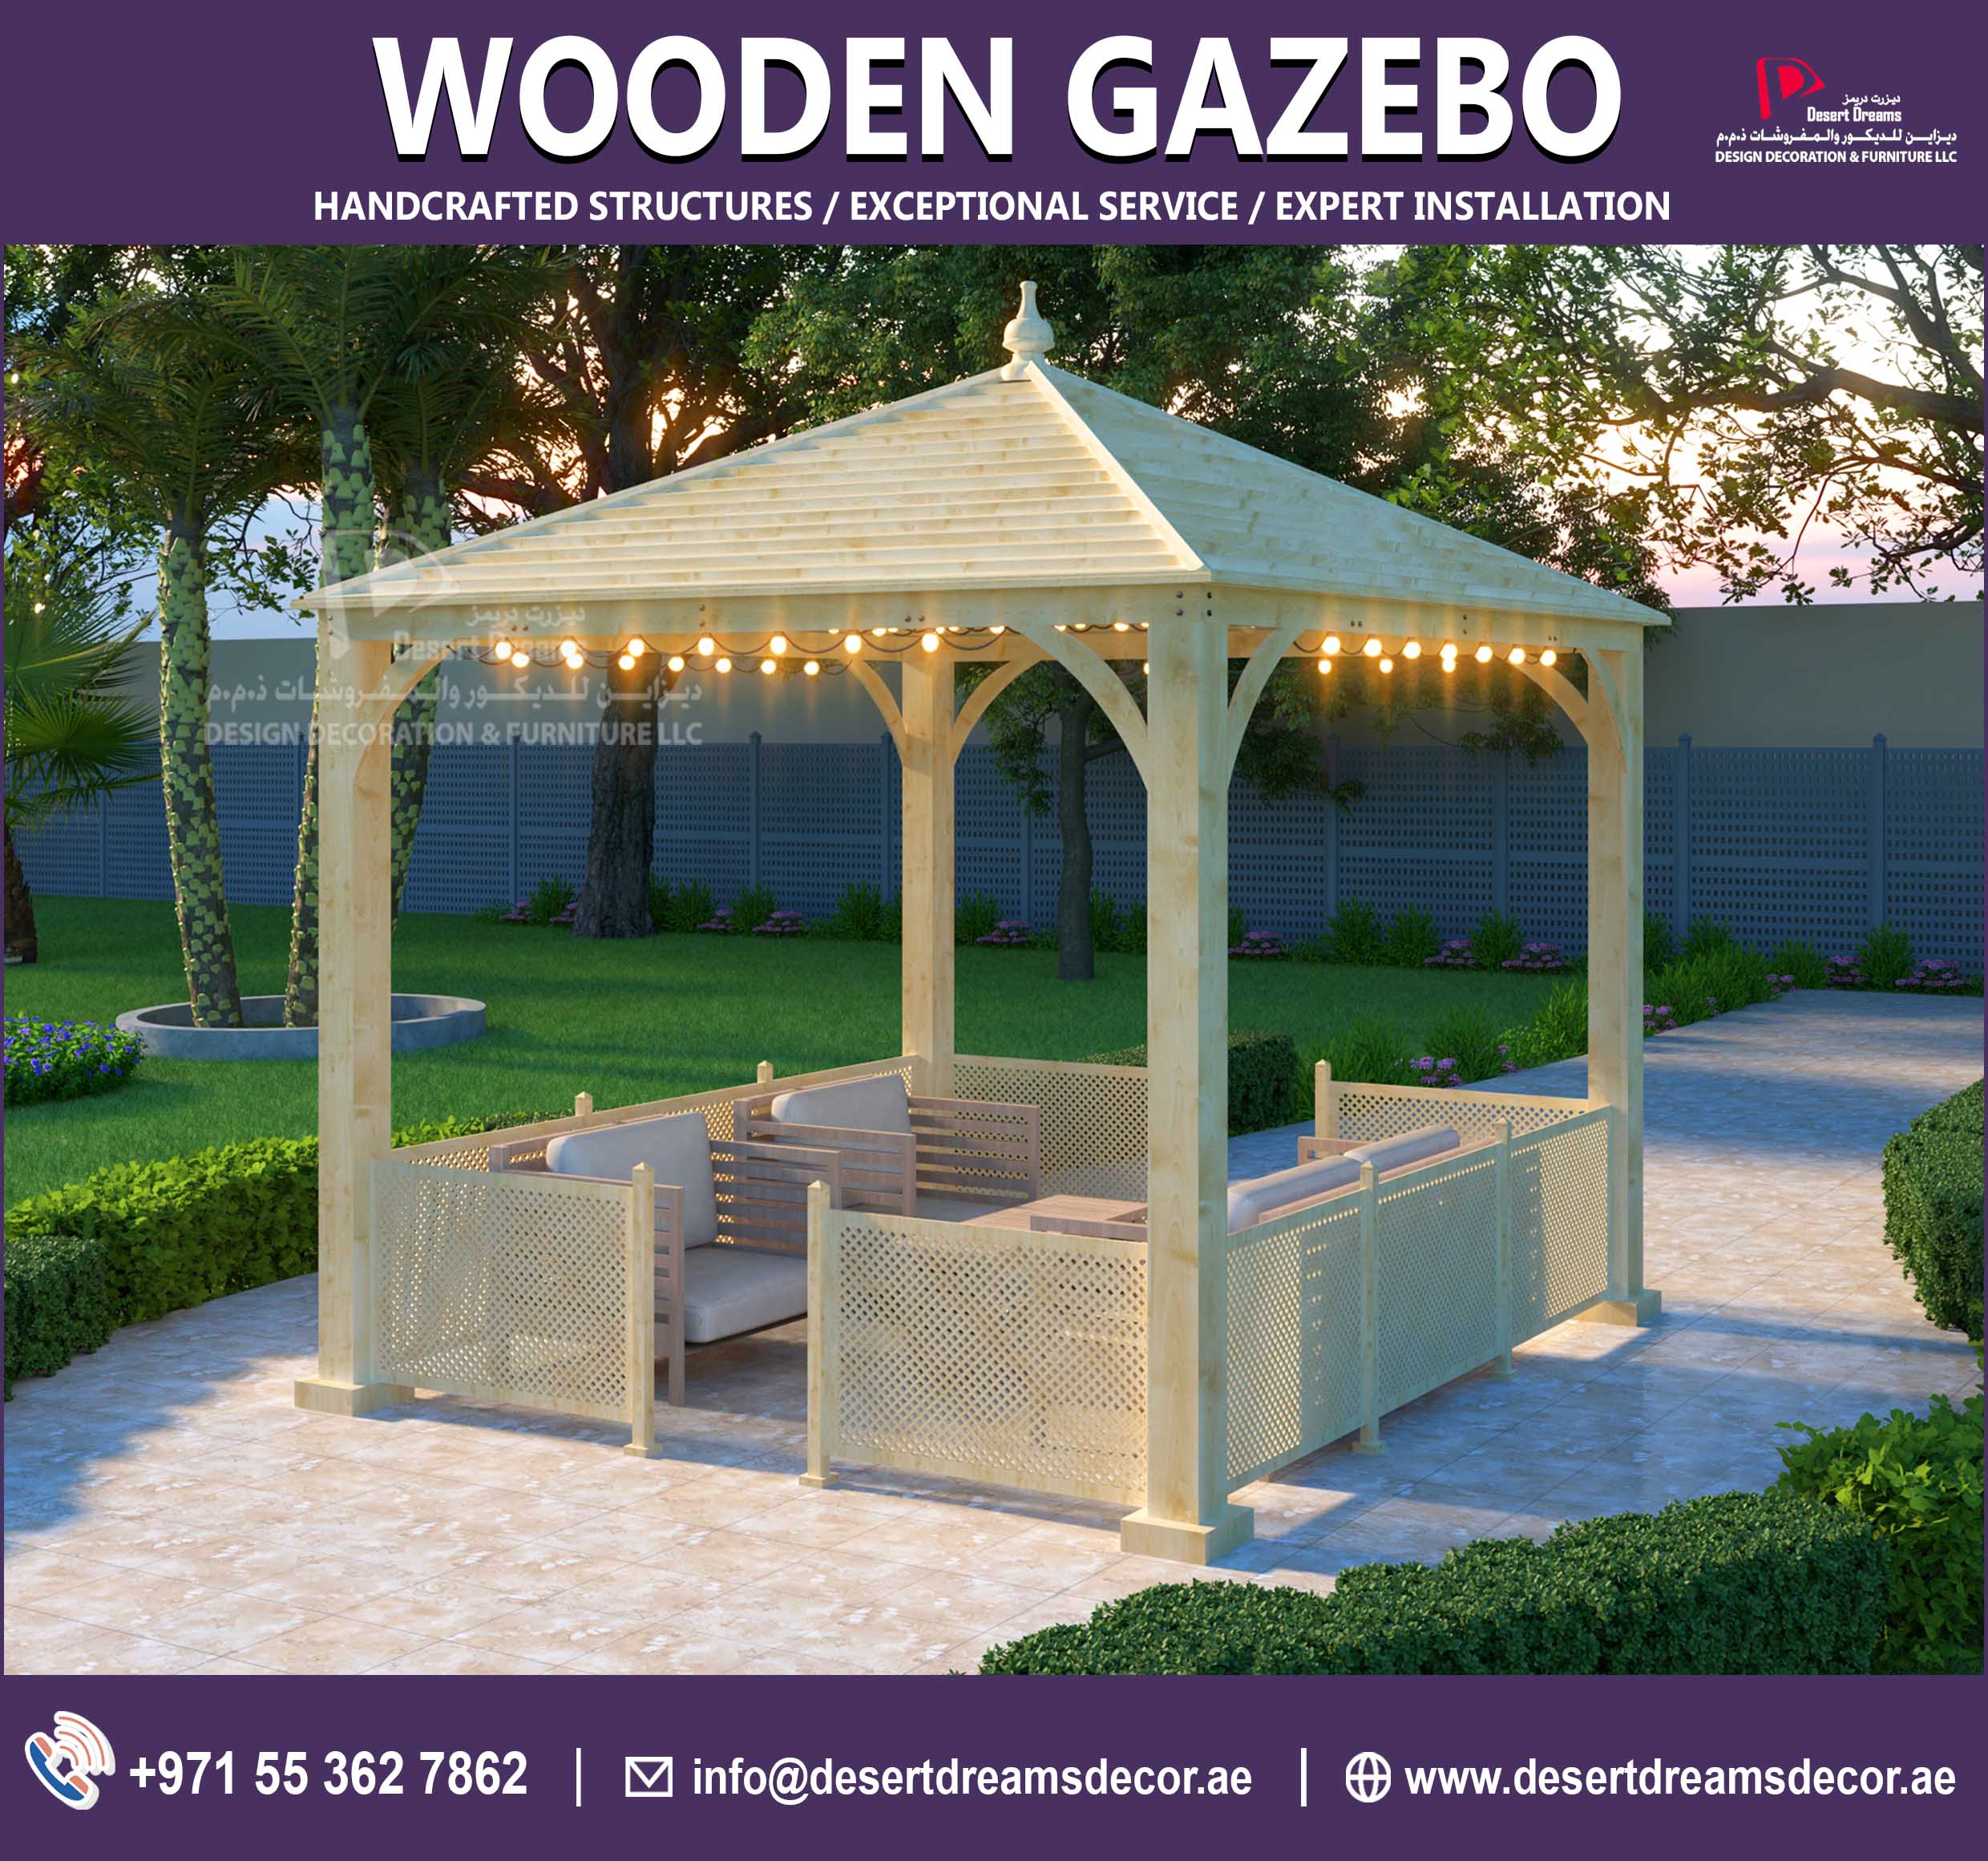 Wooden Gazebo Dubai | Wooden Gazebo Abu Dhabi.